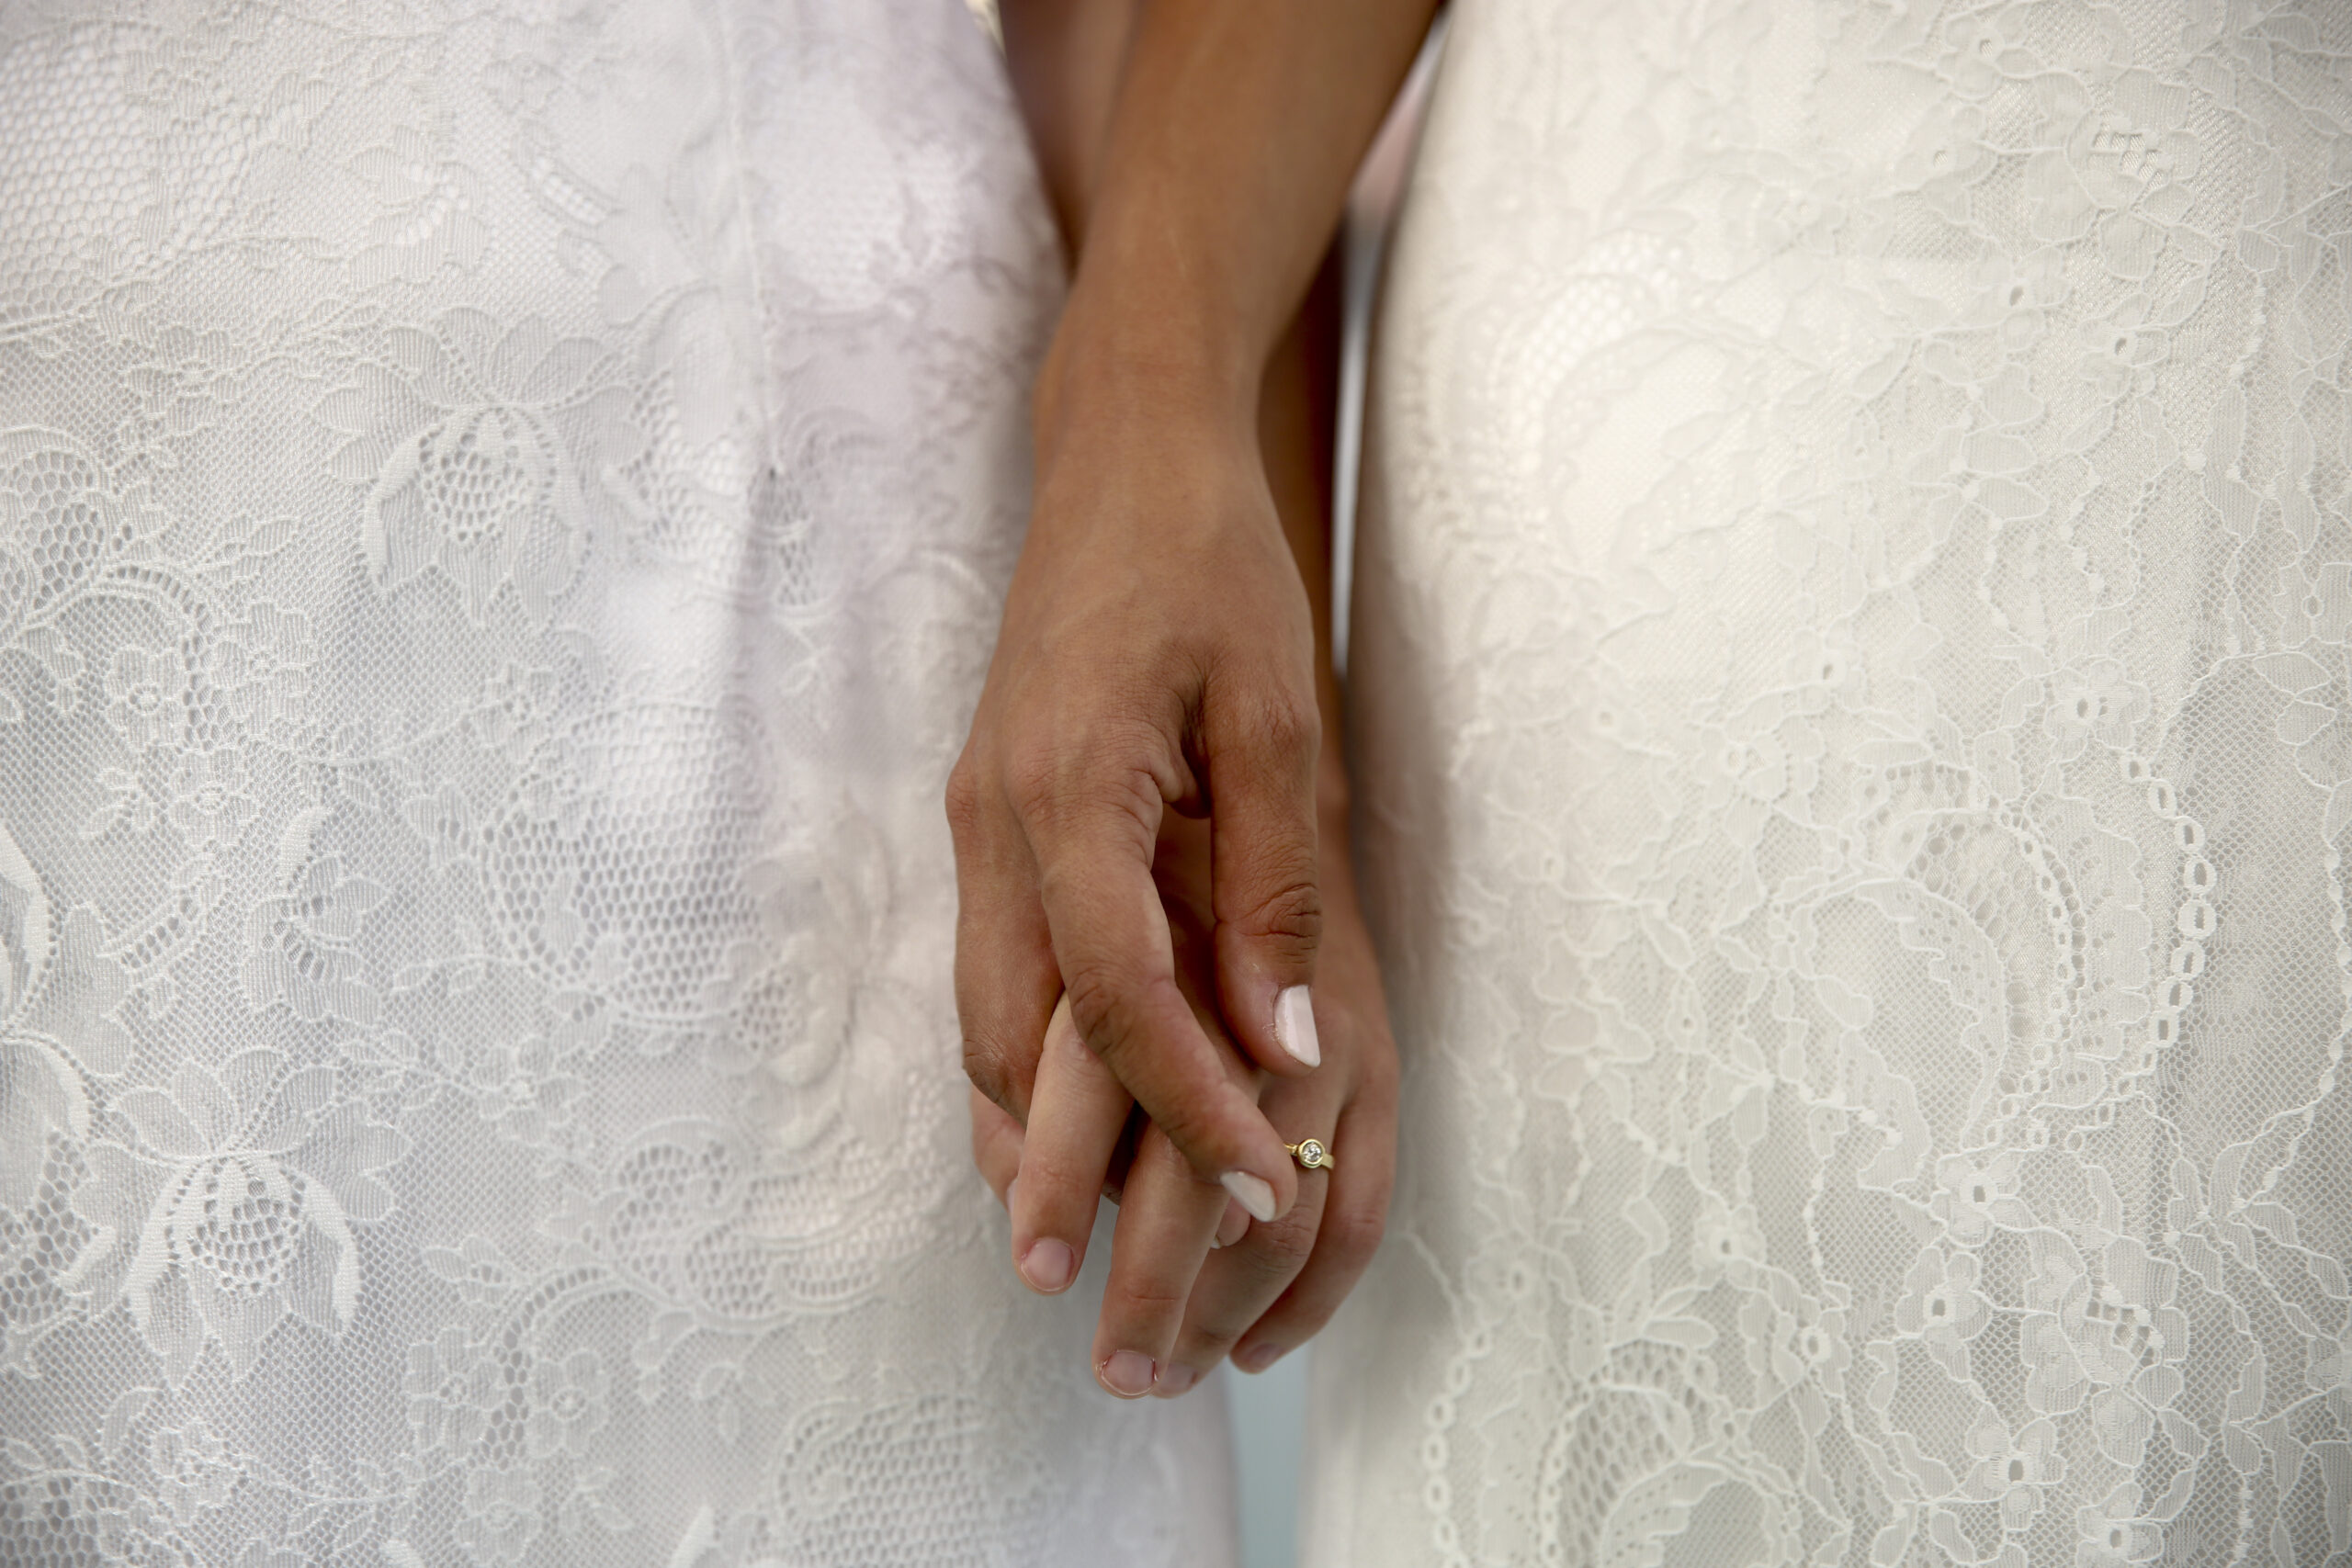 Νομοσχέδιο για ομόφυλα ζευγάρια: Παρουσιάστηκε αναλυτικά στο Υπ. Συμβούλιο – Σε δημόσια διαβούλευση για μία εβδομάδα